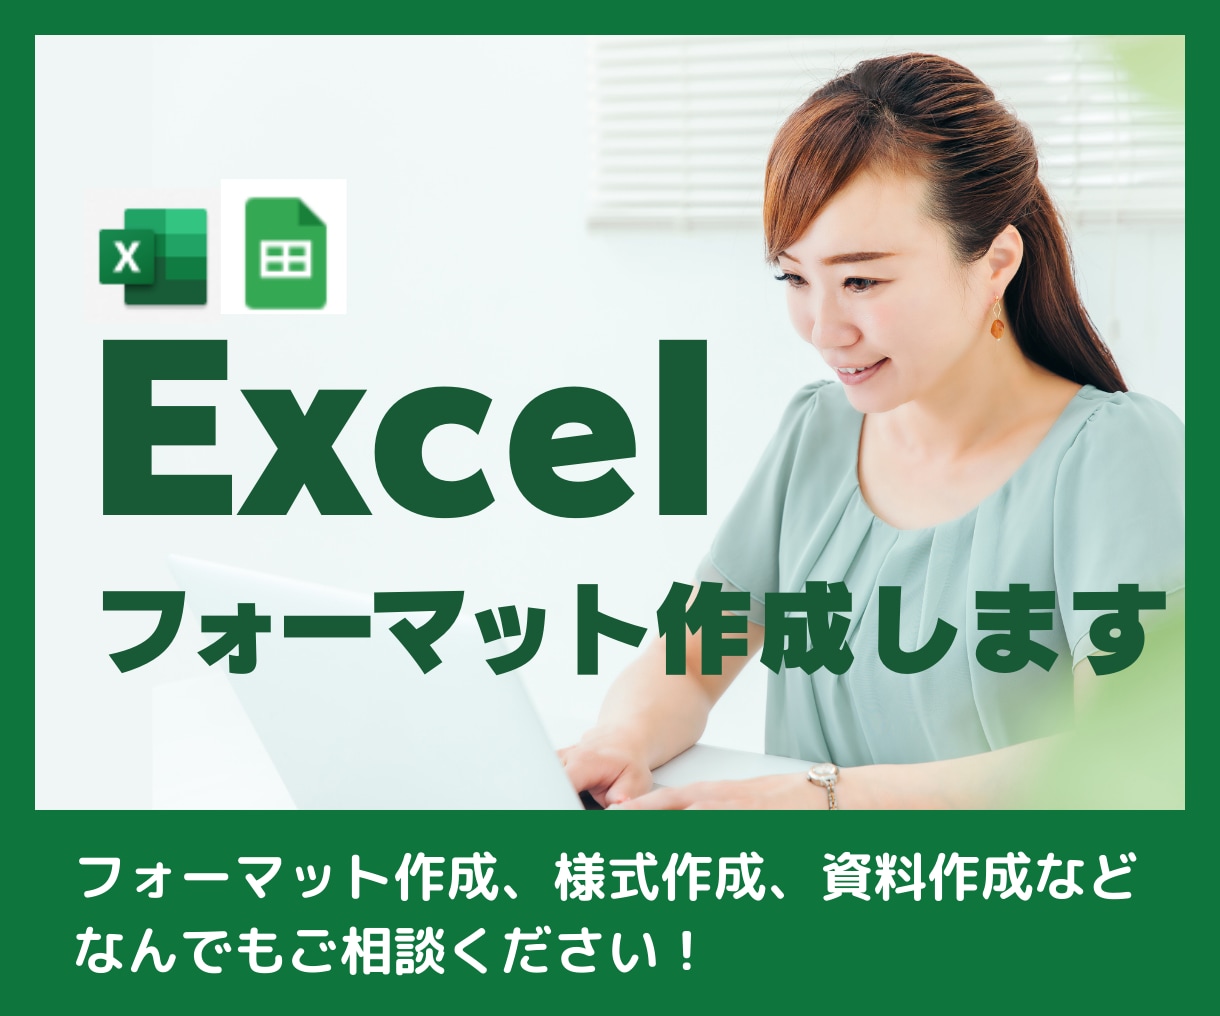 Excel(エクセル)でフォーマット作成します フォーマット作成、様式作成、資料作成などお任せください！ イメージ1